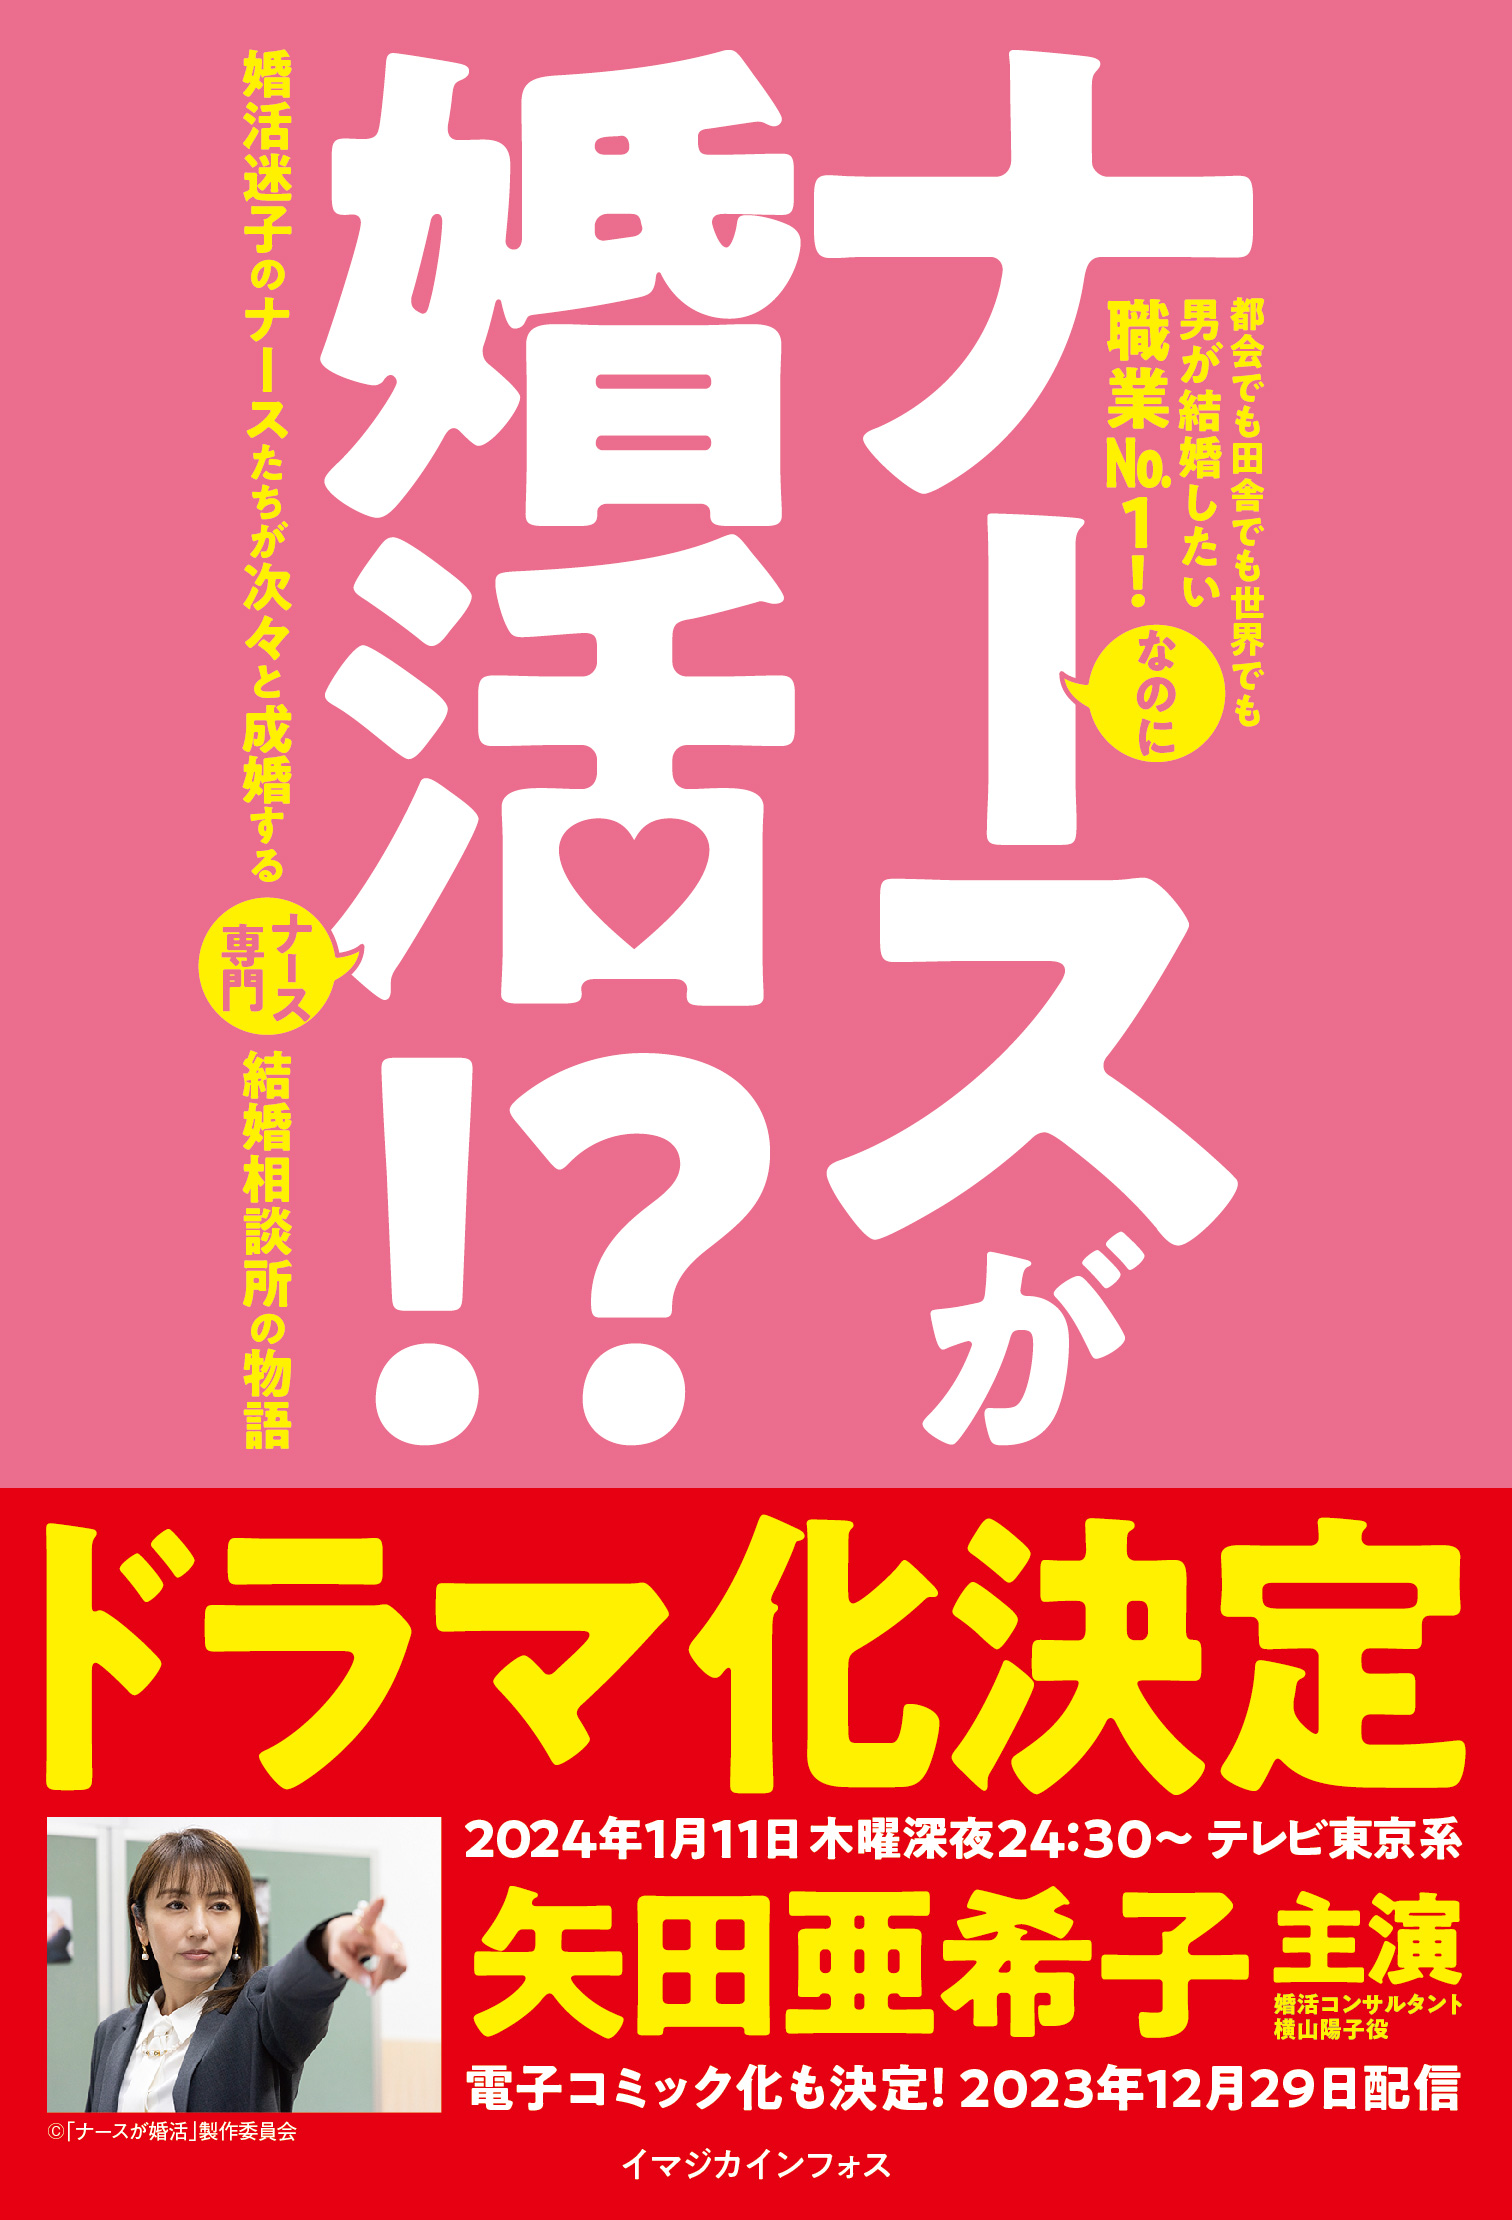 矢田亜希子、主演でドラマ化の小説『ナースが婚活!?』が話題